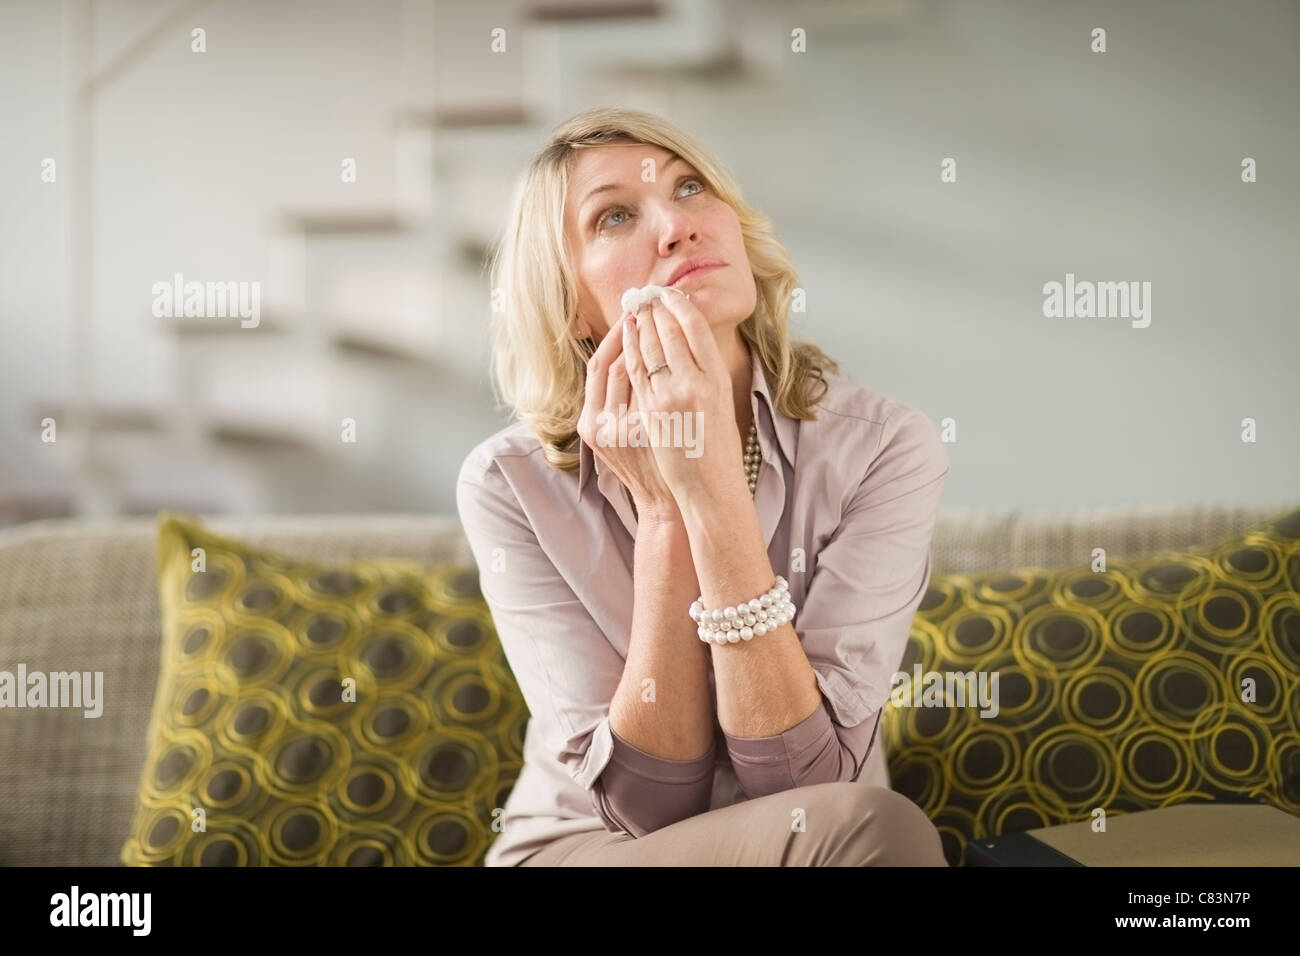 Woman wiping larmes de joues Banque D'Images